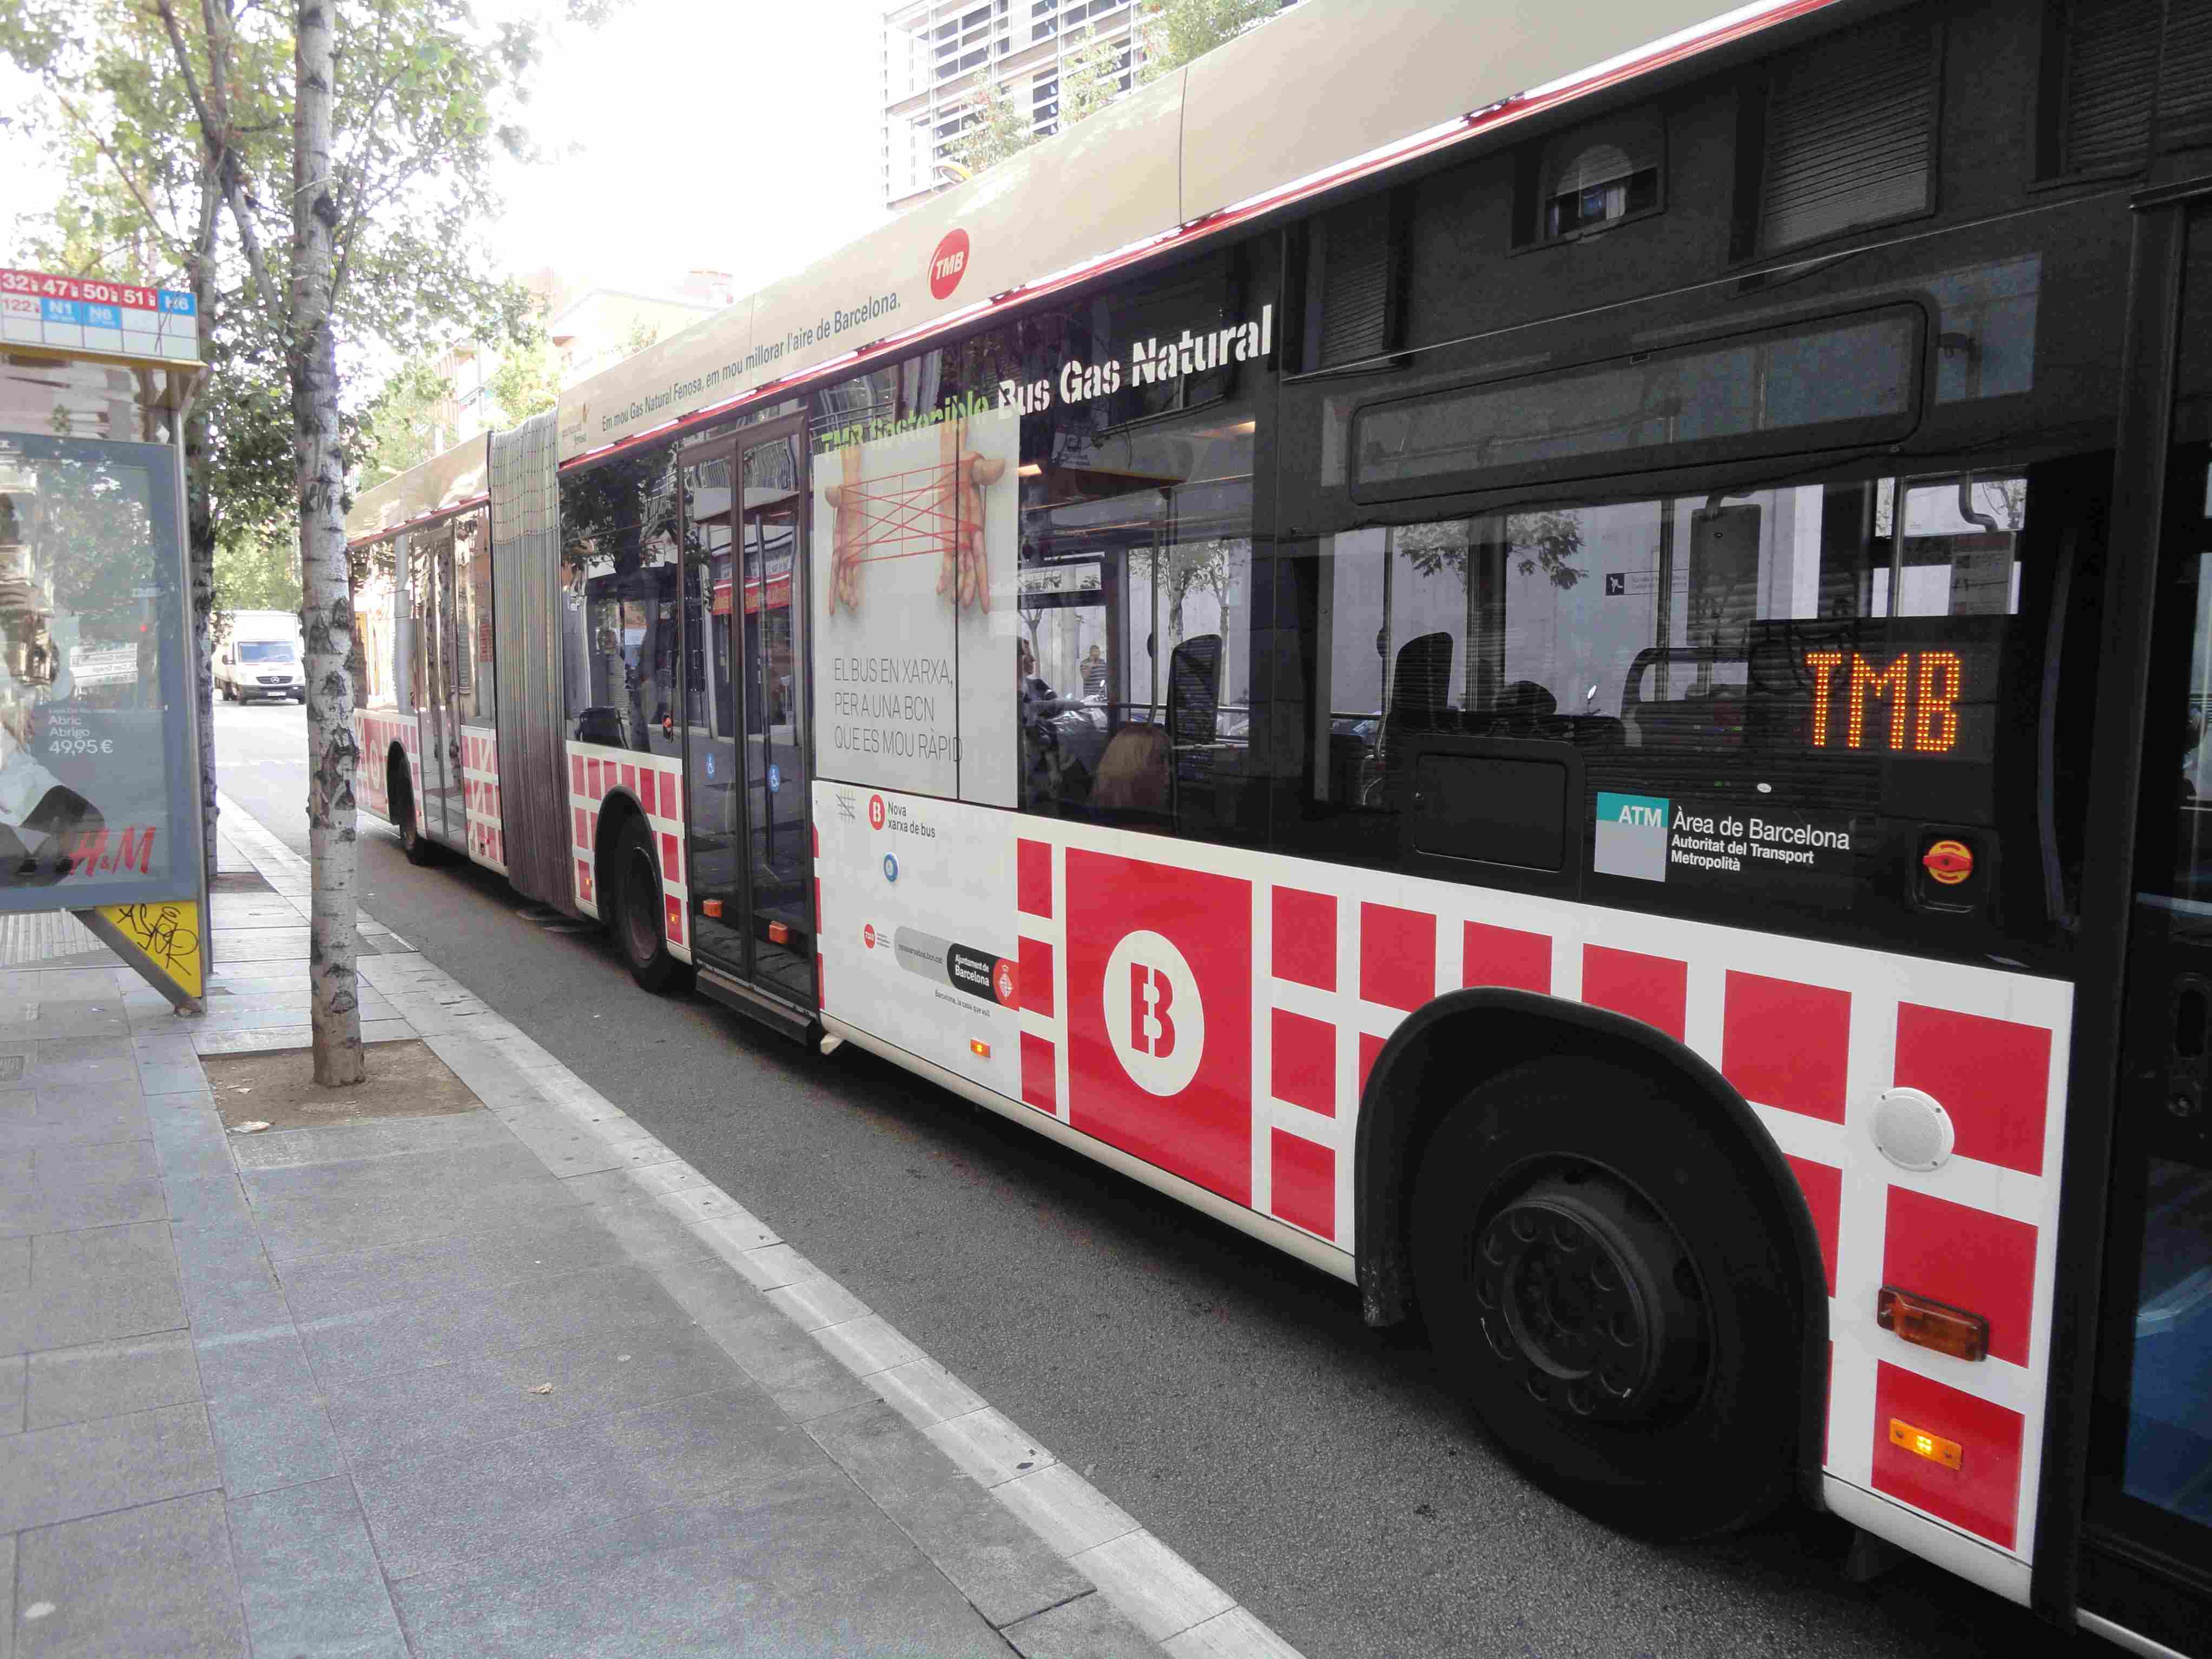 Quatre línies s’afegeixen a la xarxa de bus de Barcelona